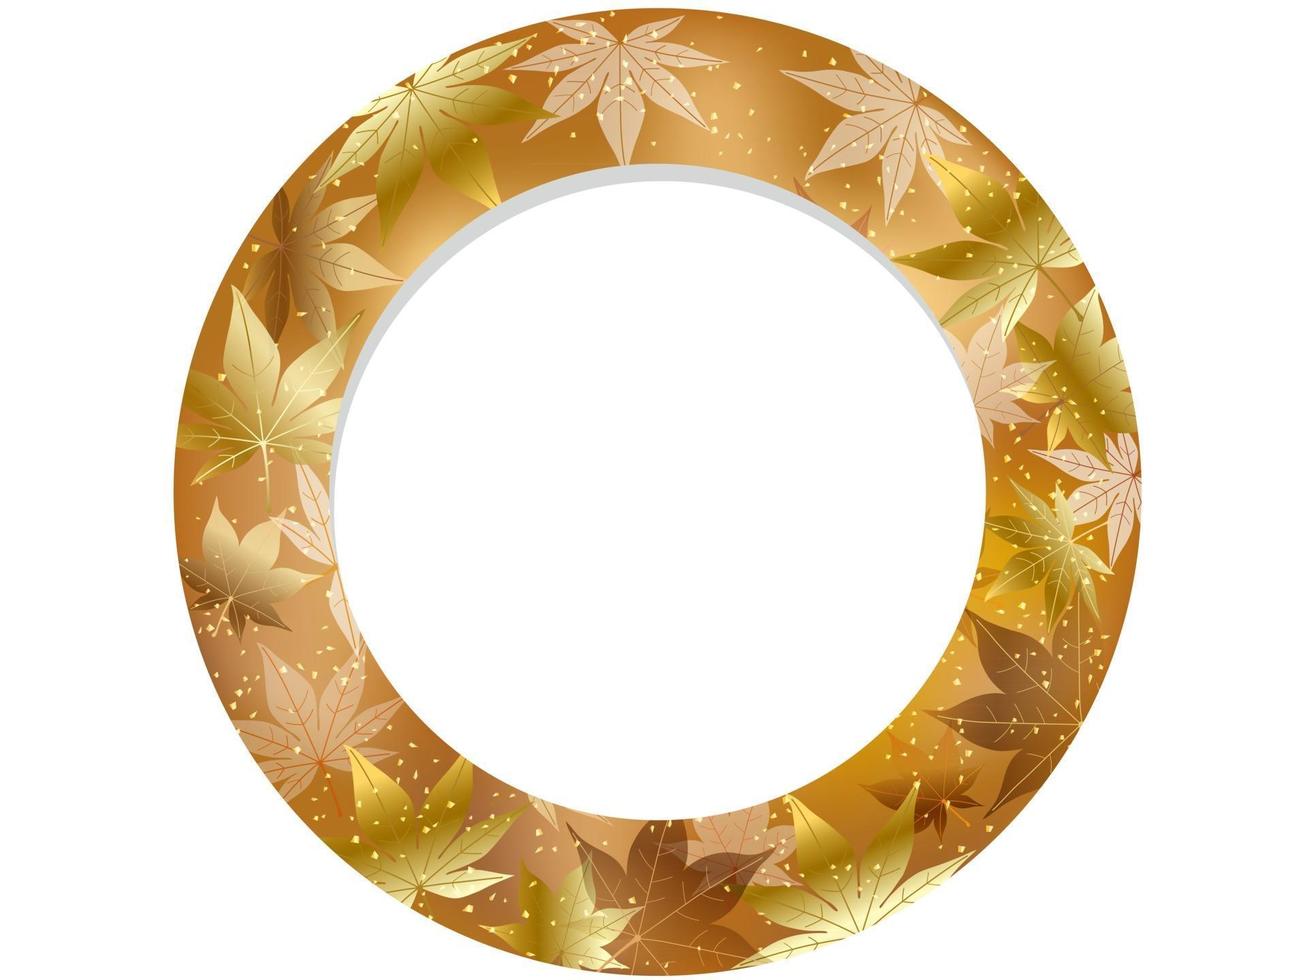 outono ouro maple leaf vector frame redondo isolado em um fundo branco.